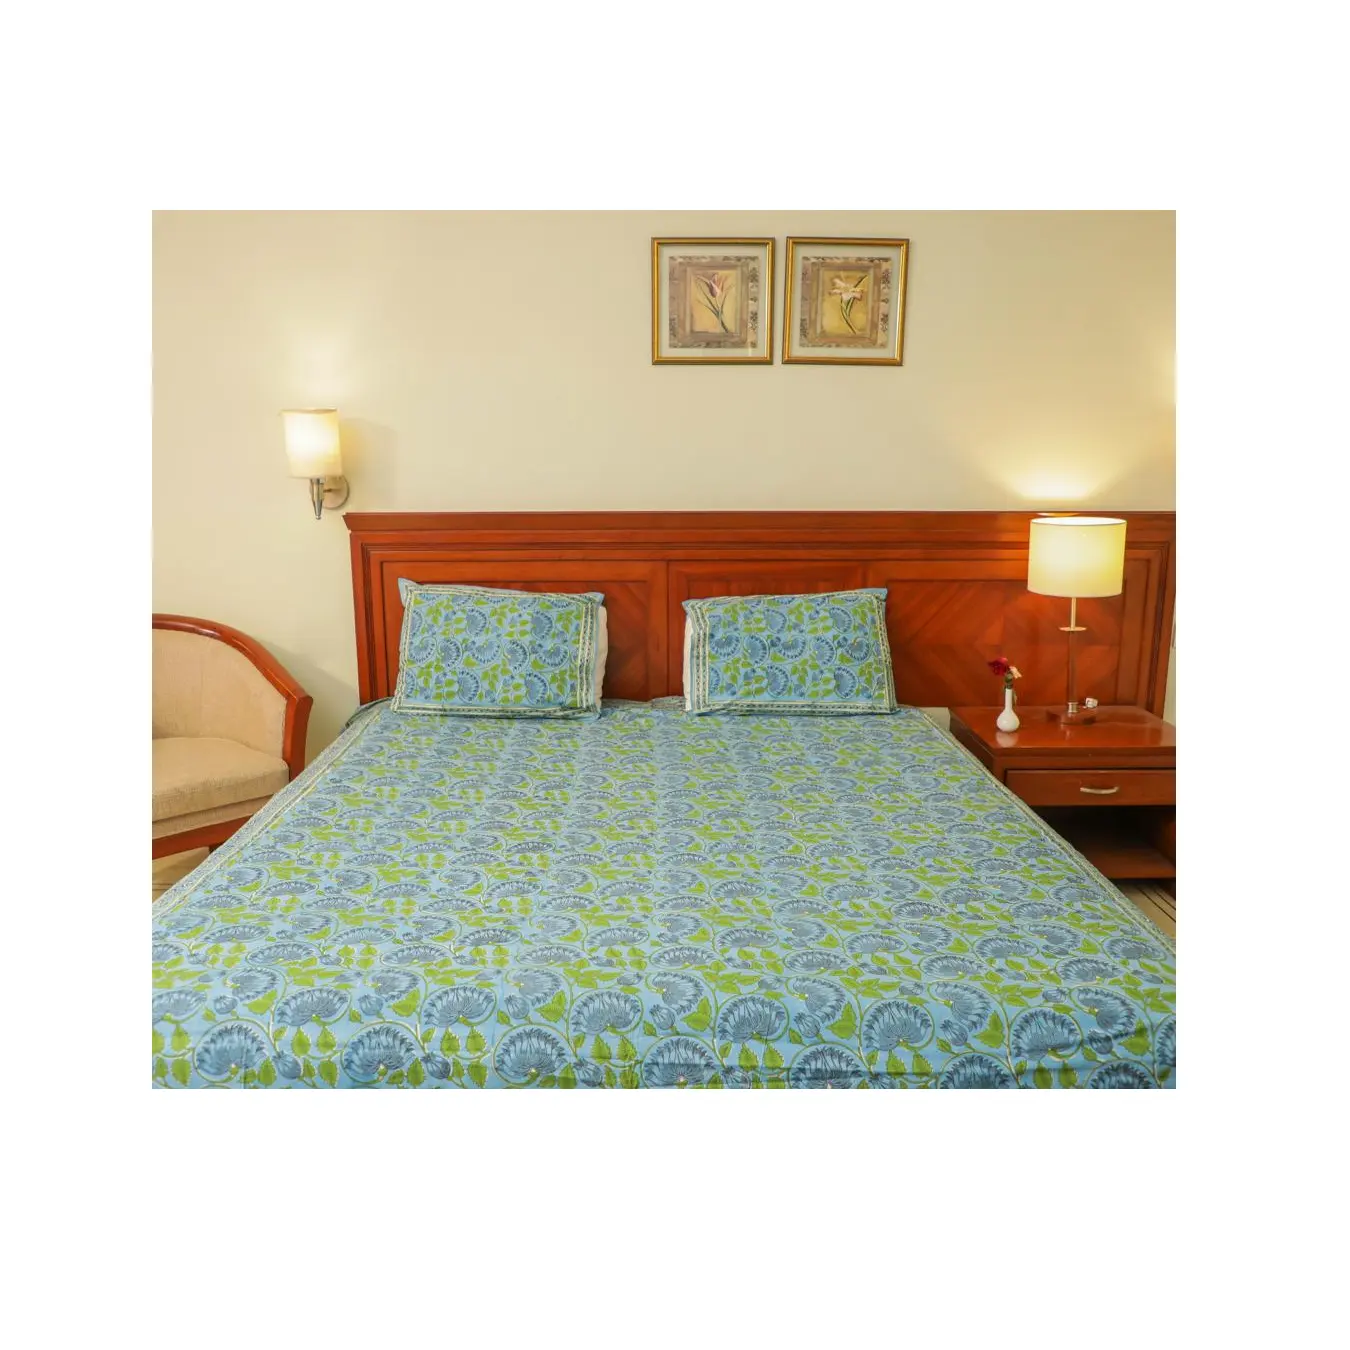 Sıcak satış % nevresim takımı pamuk yapımı ve yumuşak hissediyorum baskılı yatak odası dekorasyon için tasarlanmış yatak çarşafı kullanır